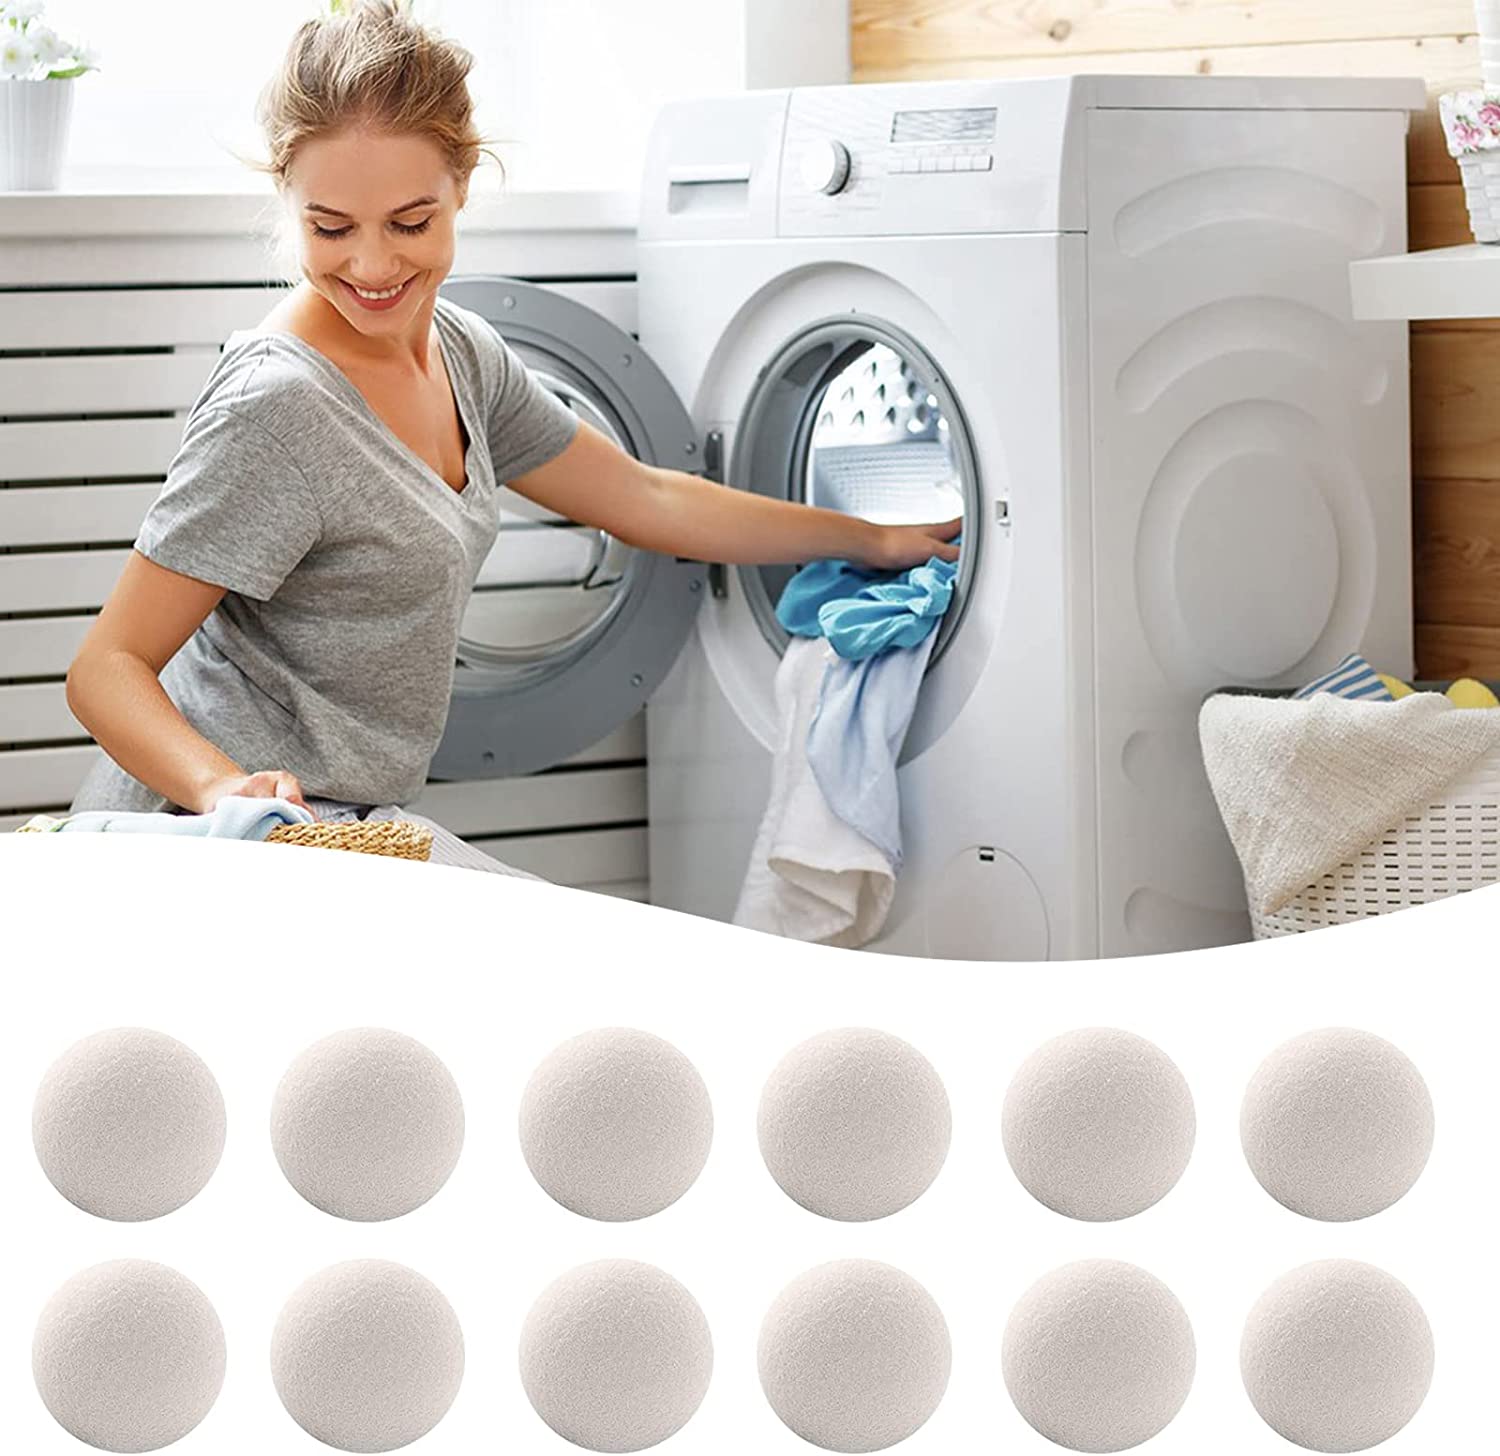 8 bolas de silicona para secadora, antibobinado, bola para lavadora,  suavizante de tela, alternativa para evitar nudos, para lavadora, secadora,  herramienta de limpieza de lavandería (blanco y gris), Mode de Mujer